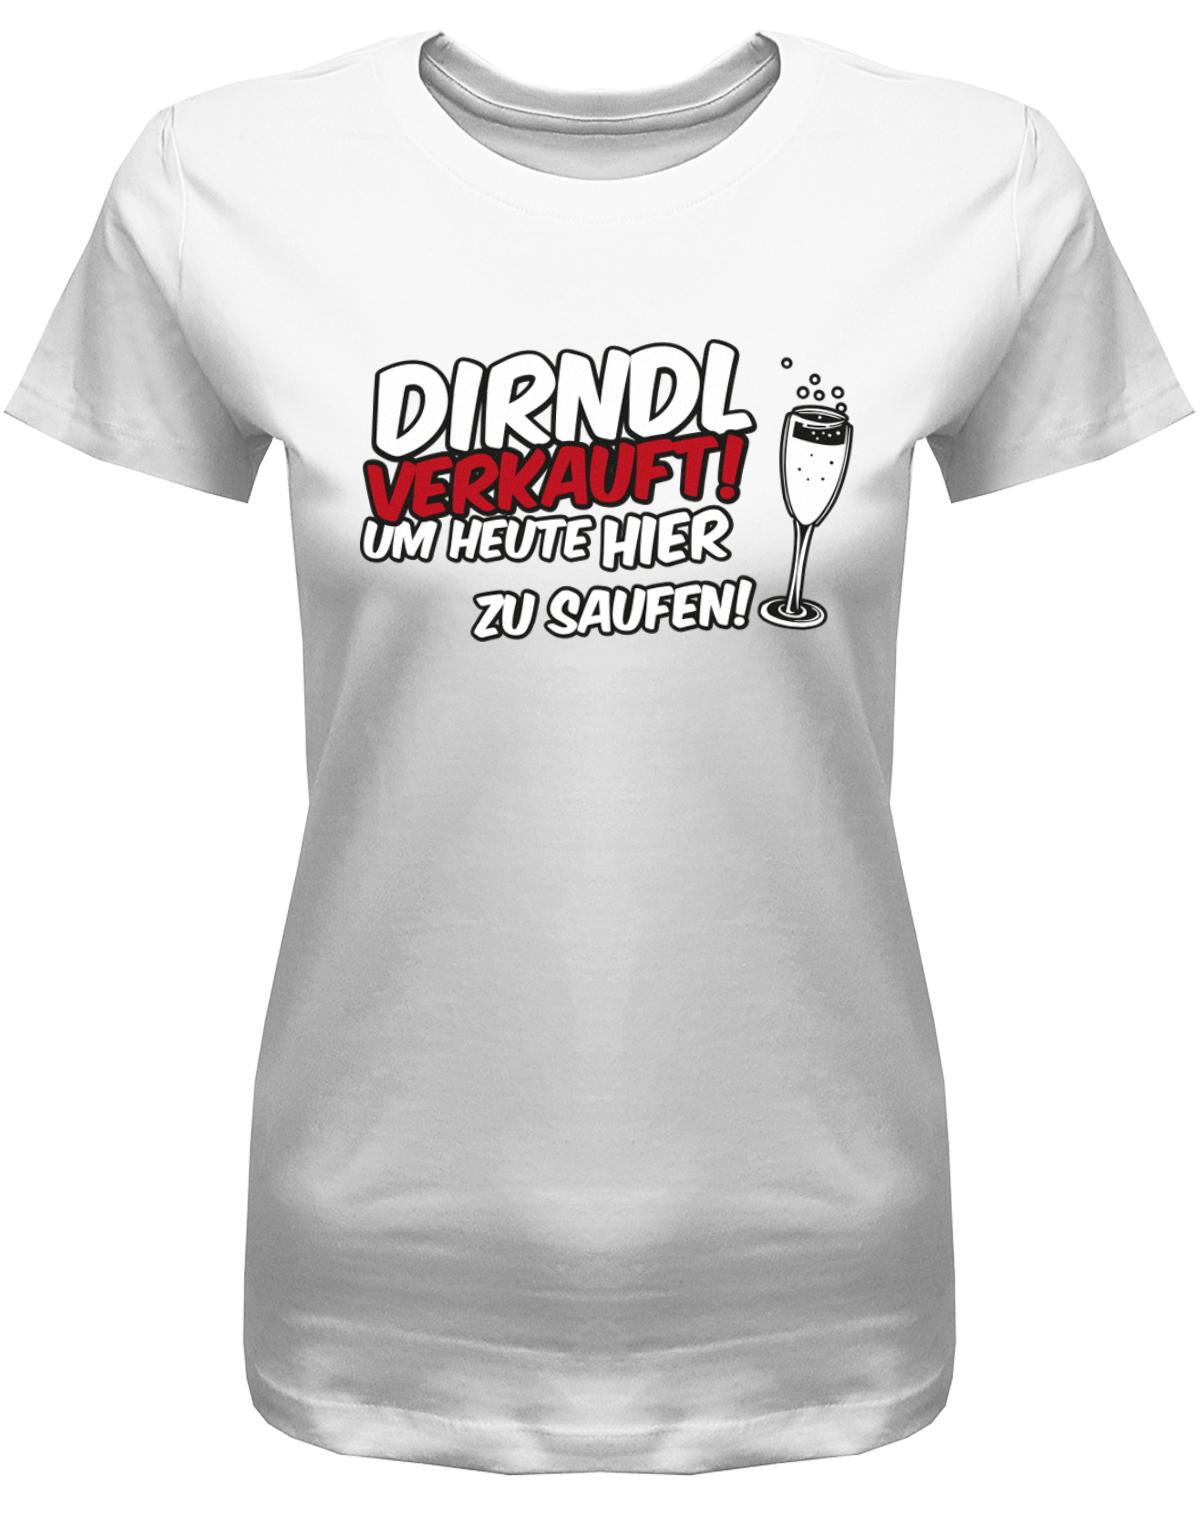 Dirndl-verkauft-um-heute-hier-zu-saufen-Damen-Shirt-Weiss